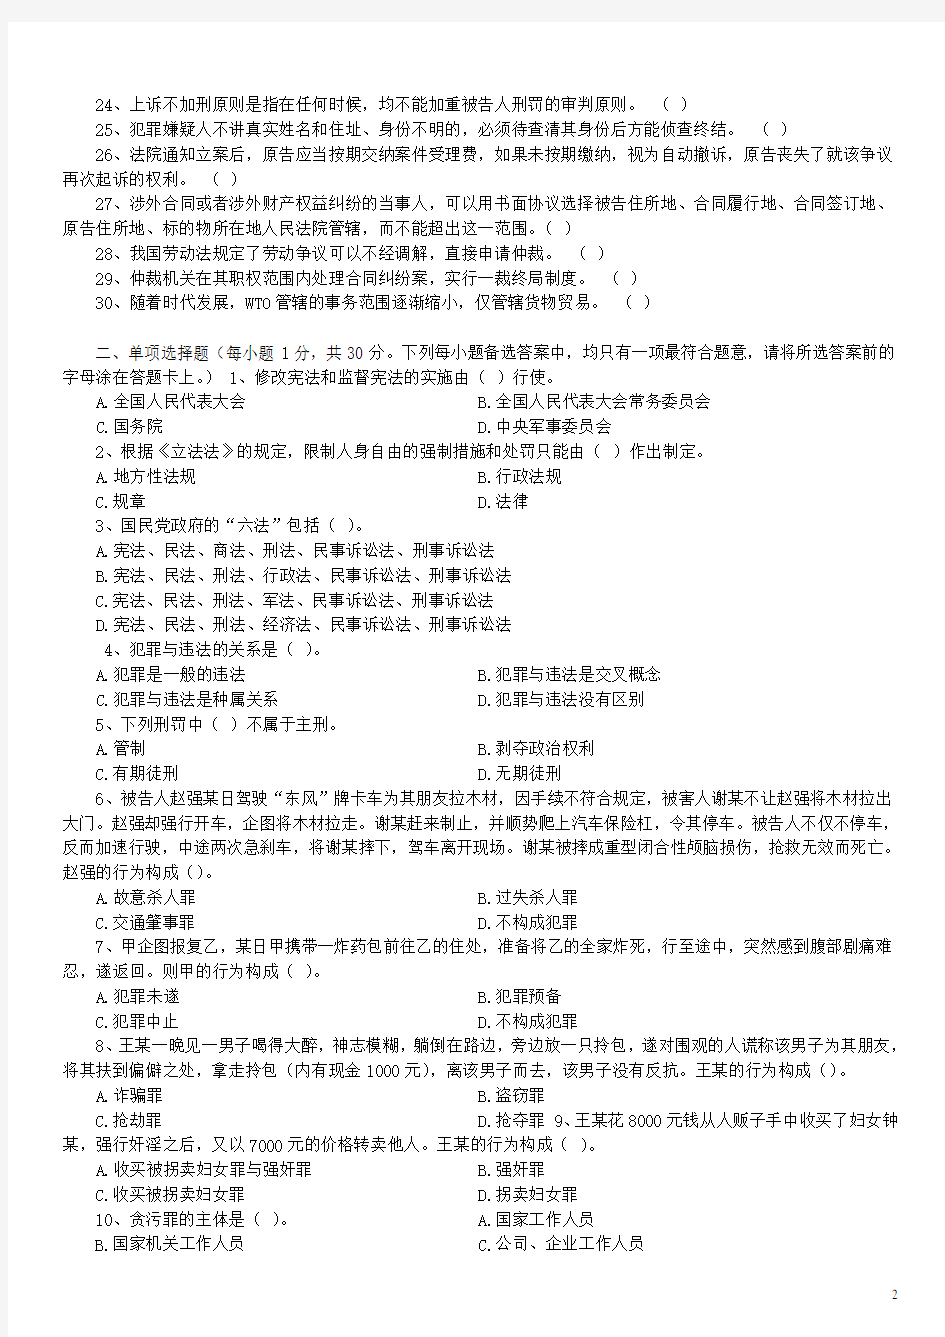 2006年重庆市法院系统招聘书记员考试《法律基础知识》真题及答案